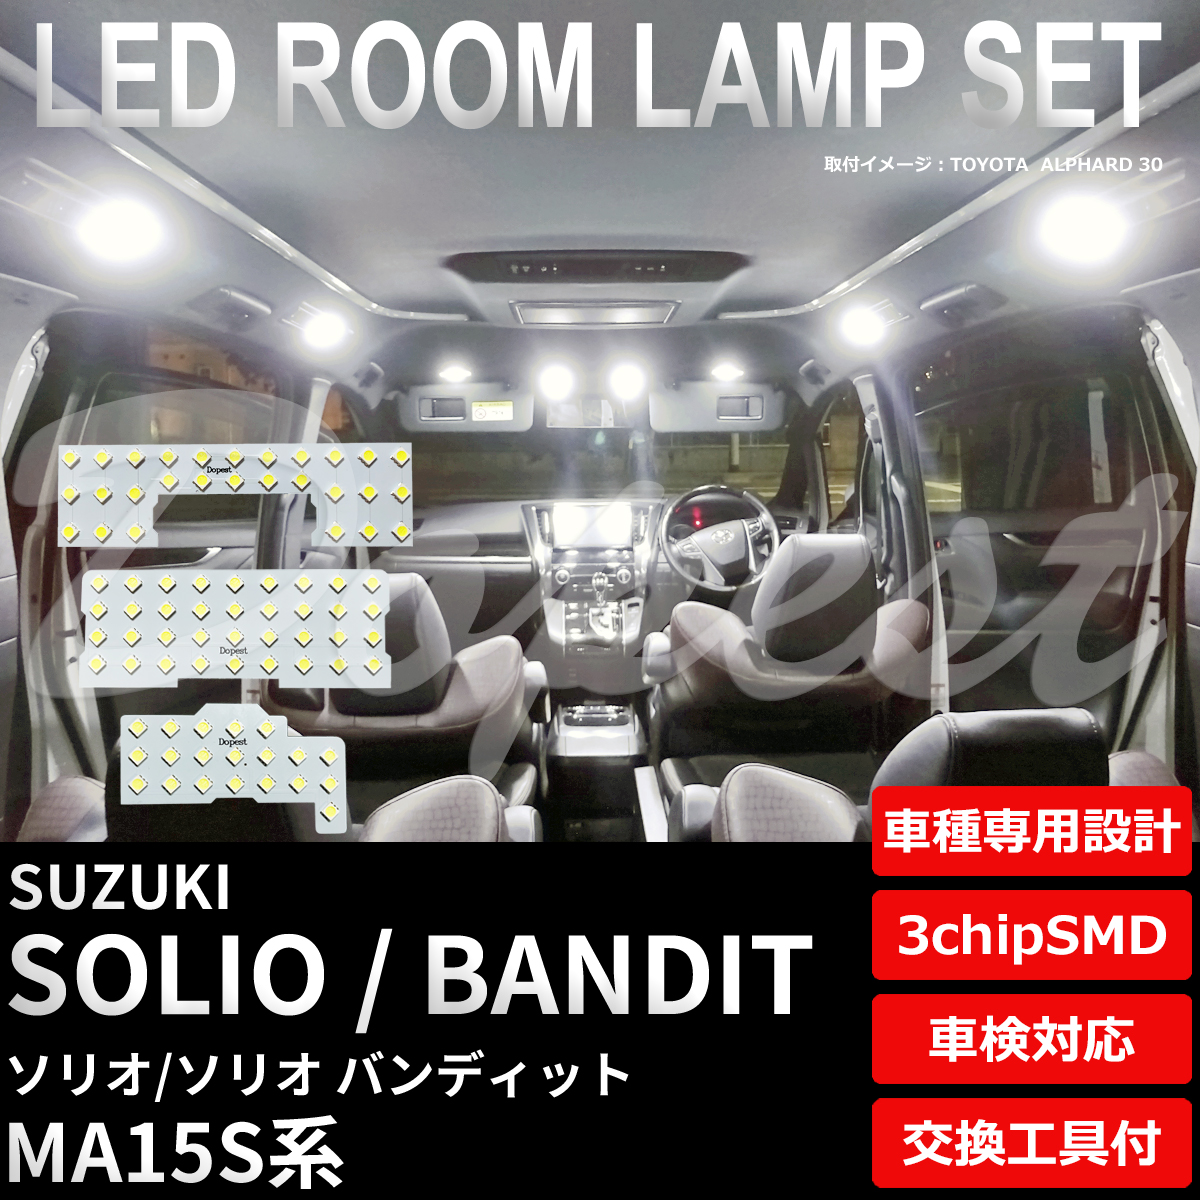 ソリオ/バンディット LEDルームランプセット MA15S系 車内灯